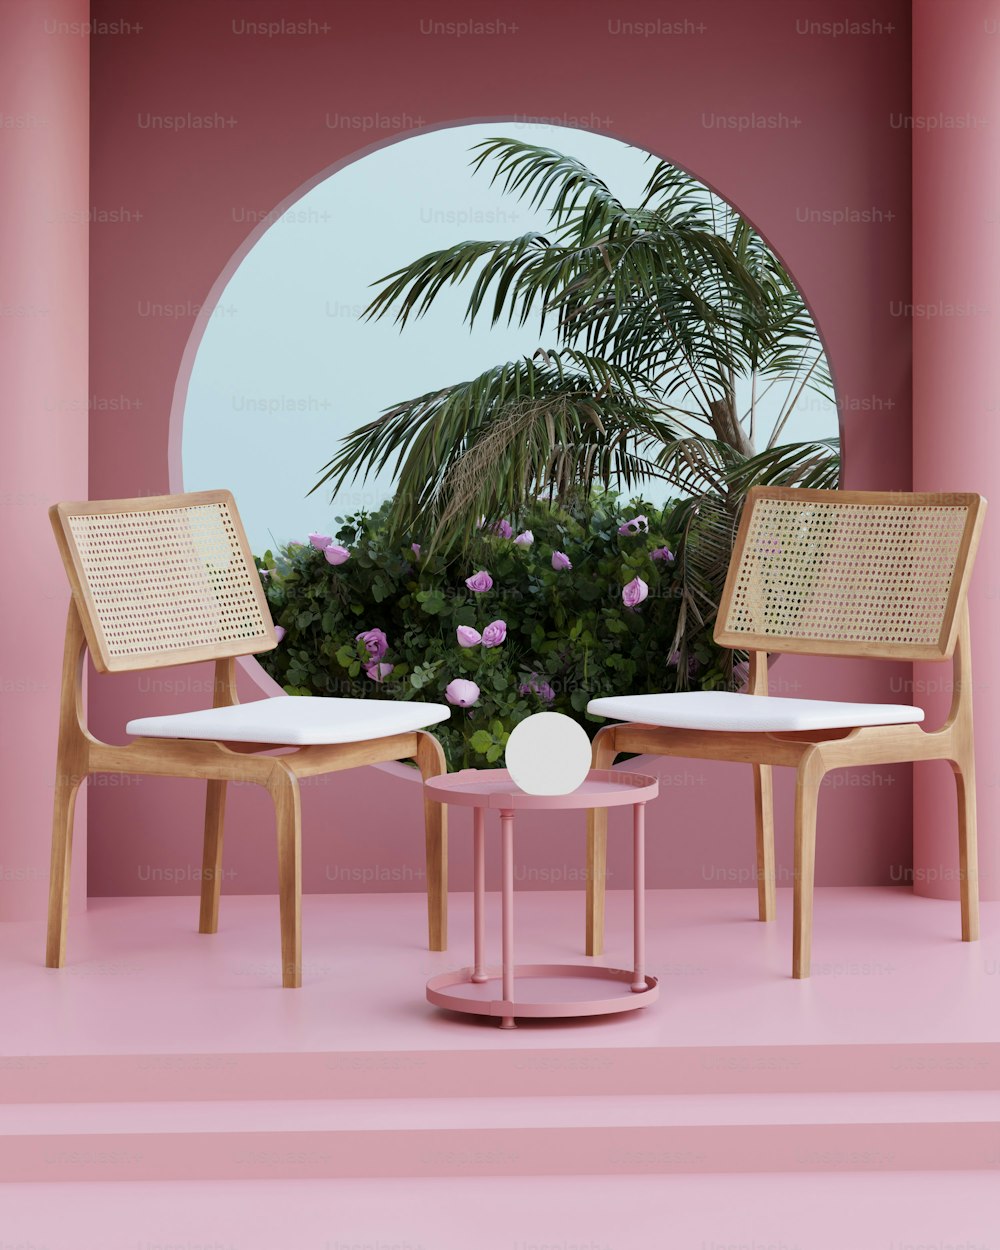 의자 2개와 테이블이 있는 분홍색 방